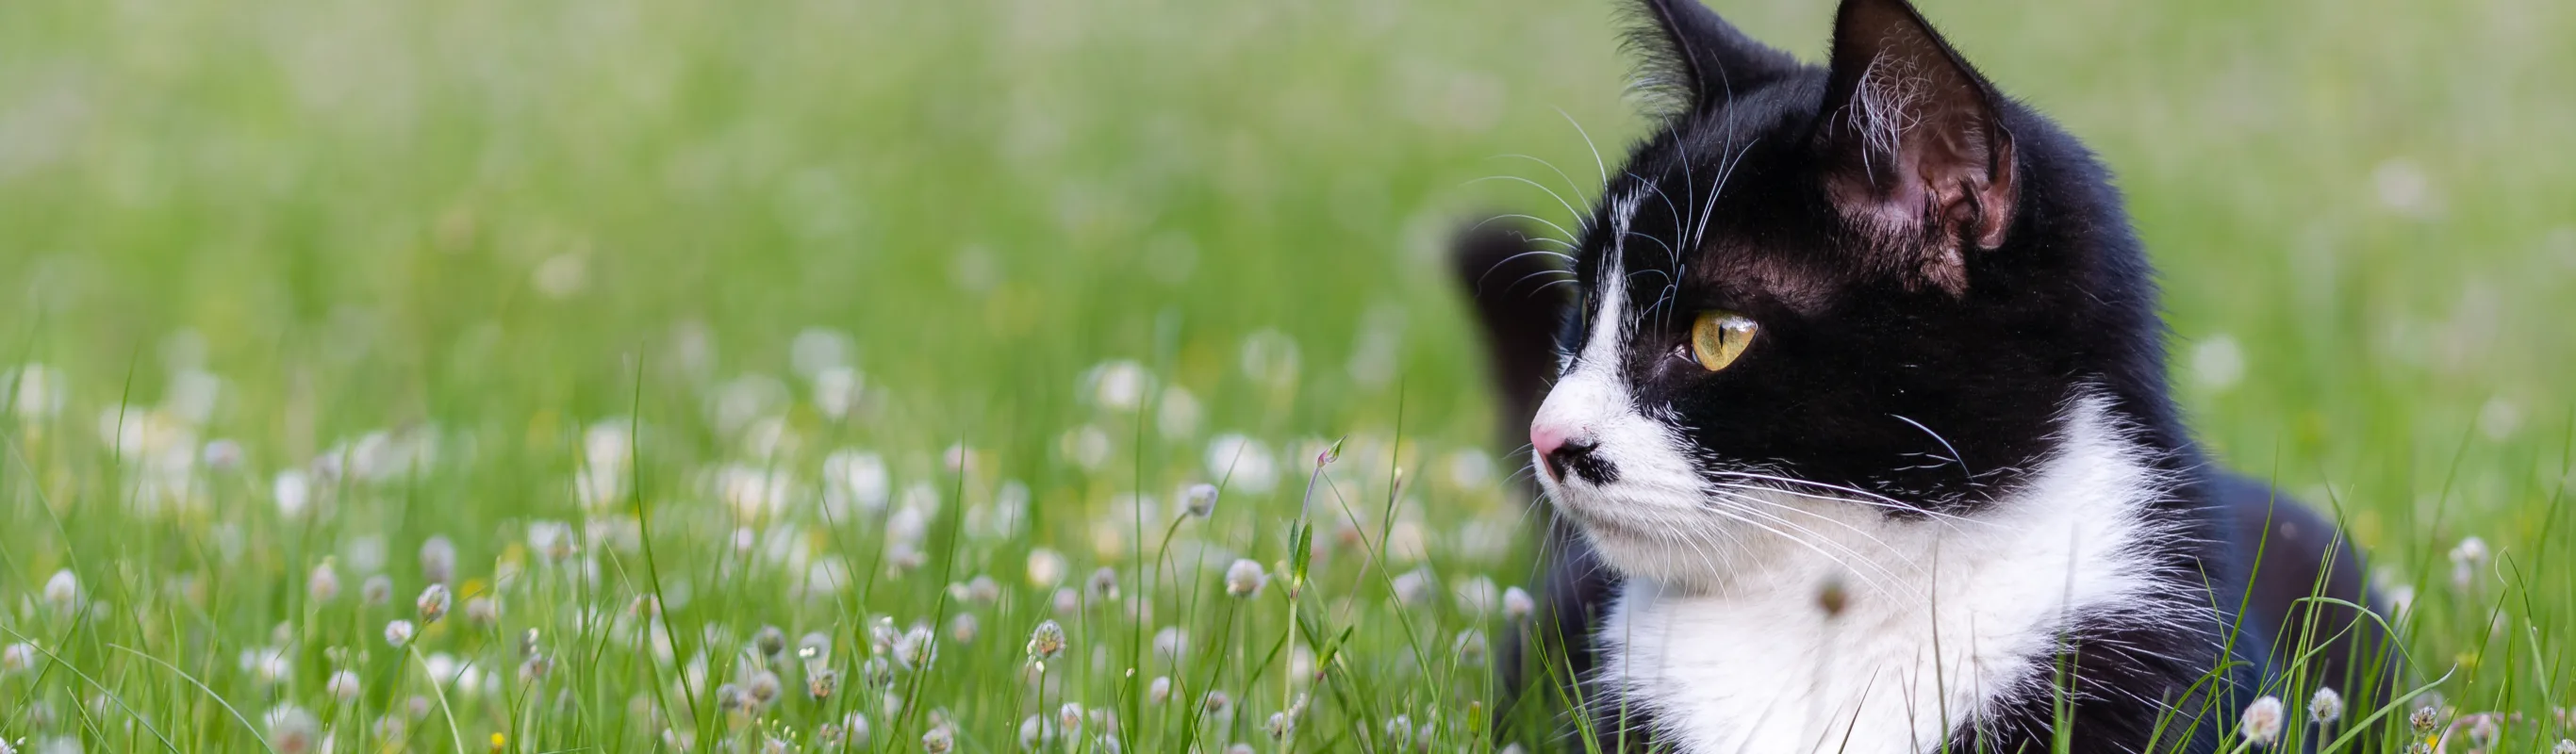 cat sitting in a field of flowers